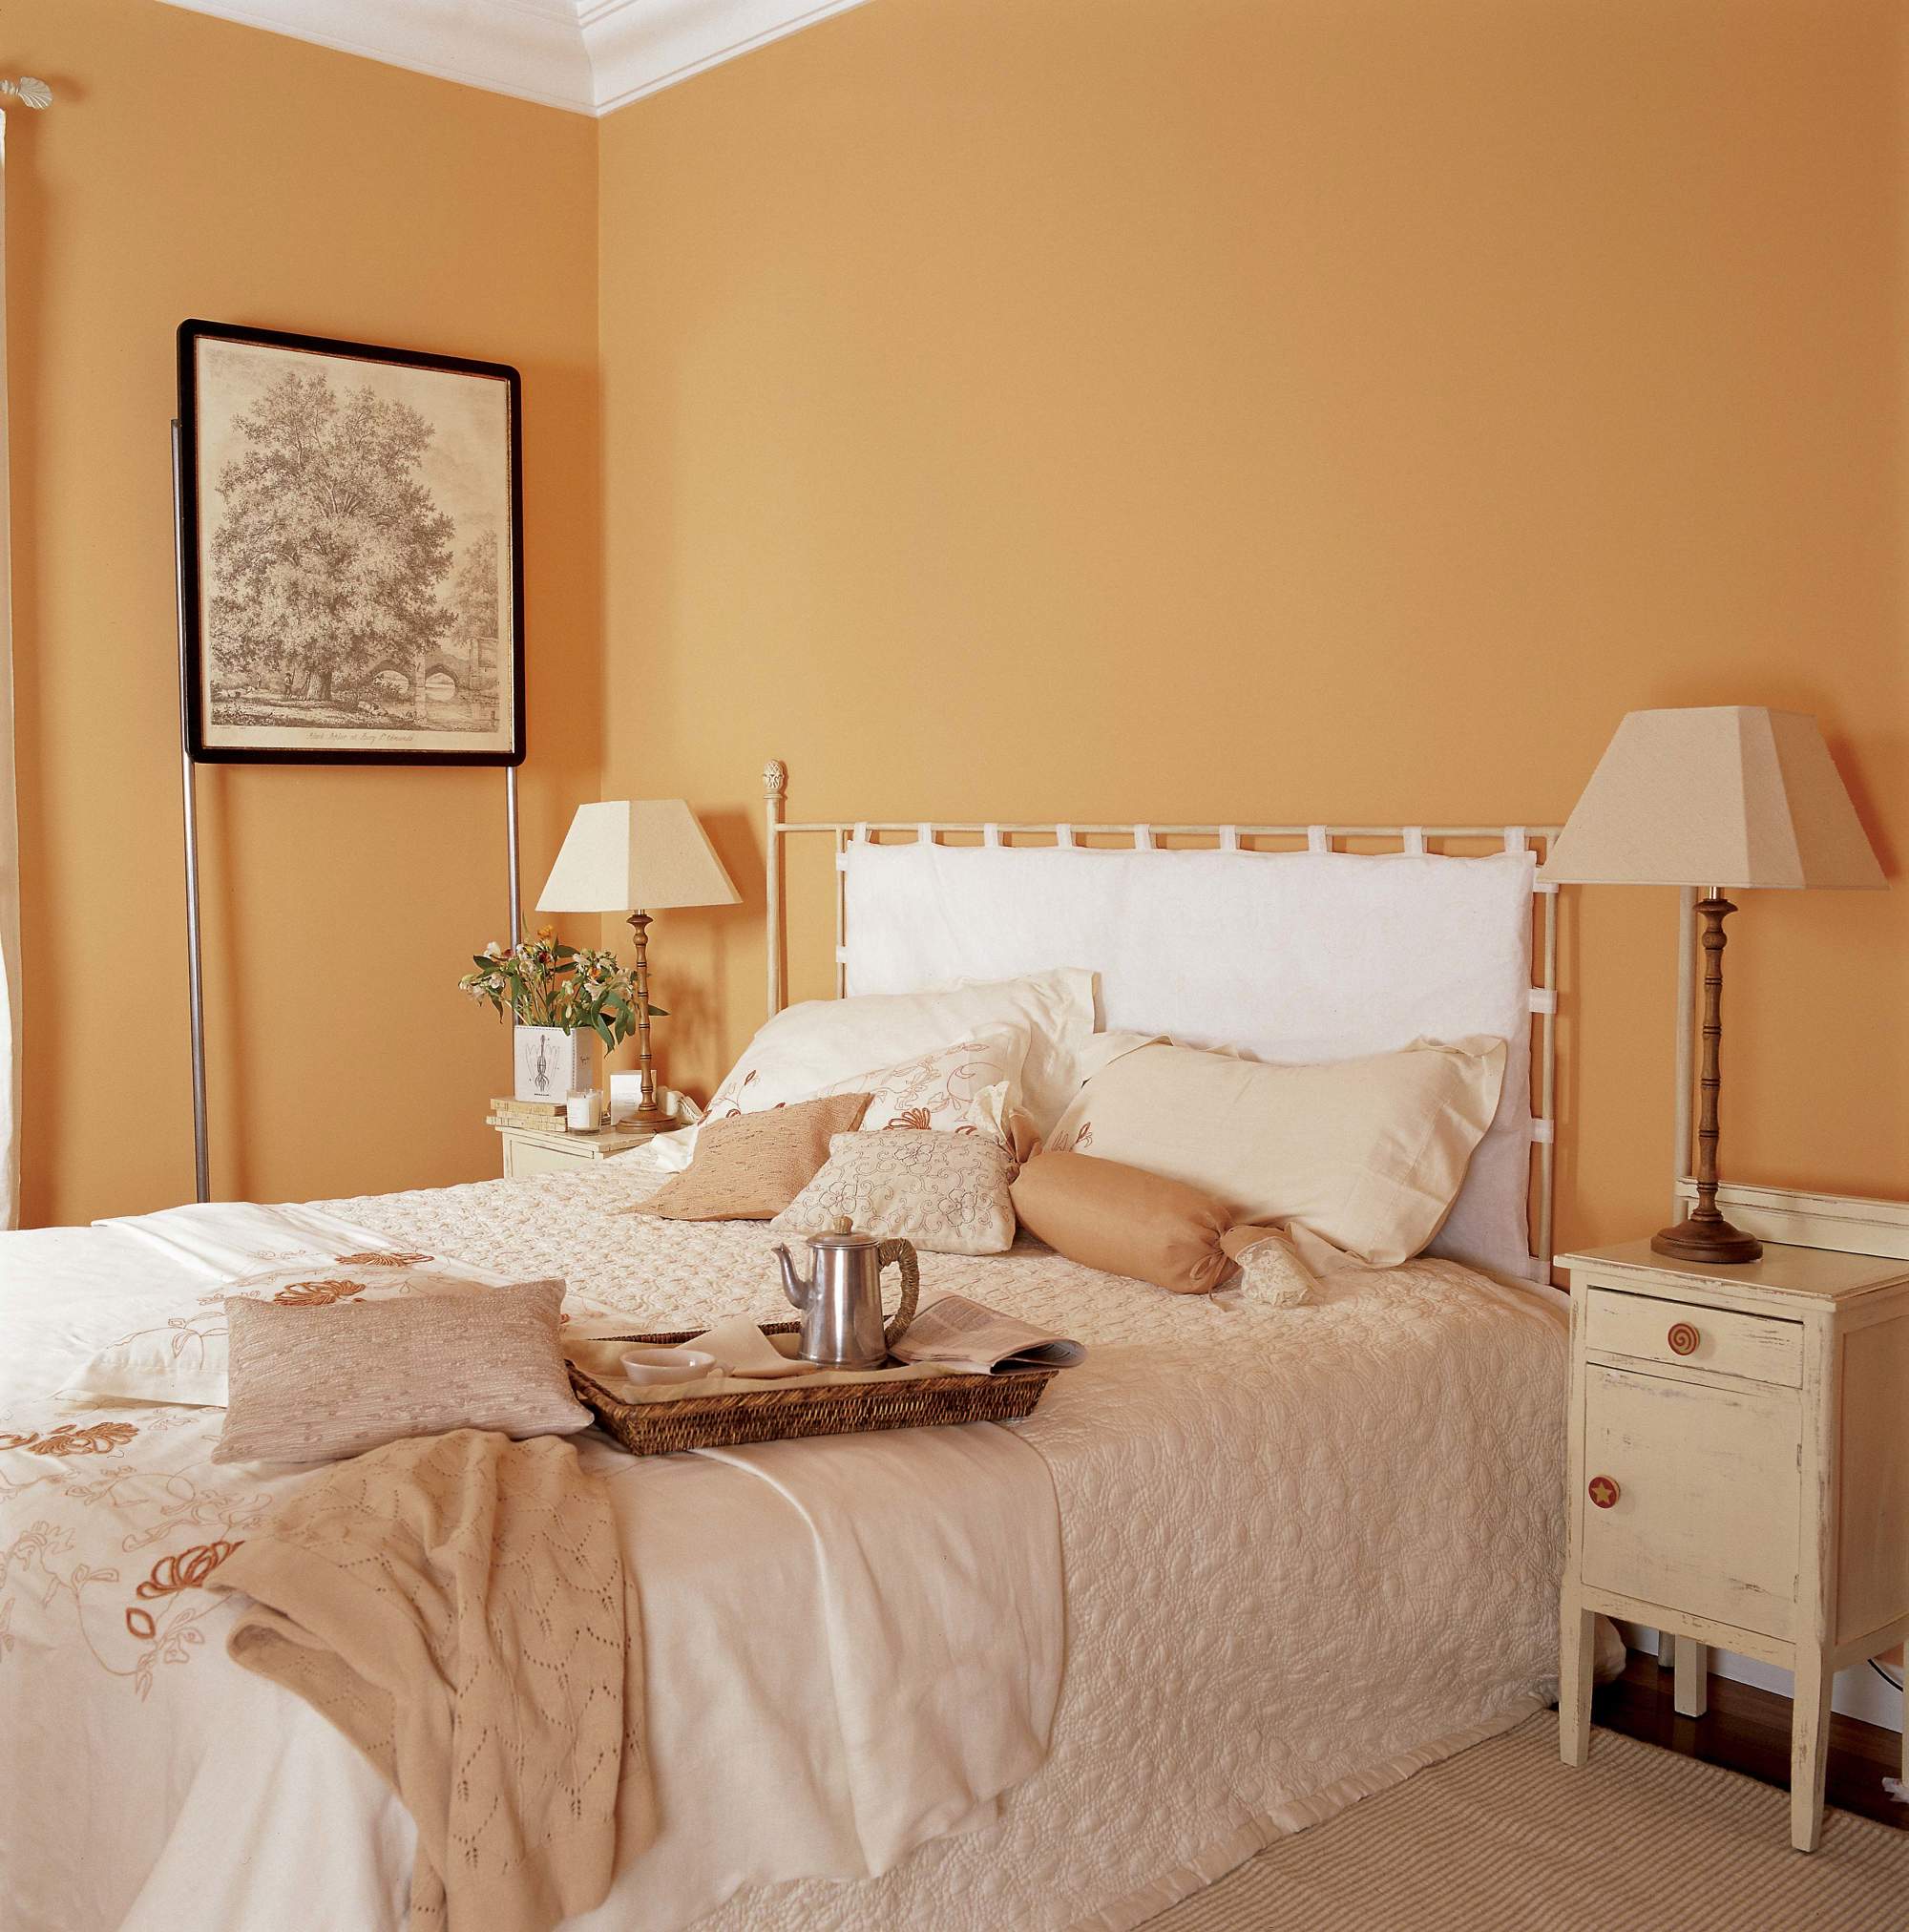 Dormitorio con paredes pintadas de naranja, cabecero blanco y mesillas de noche 